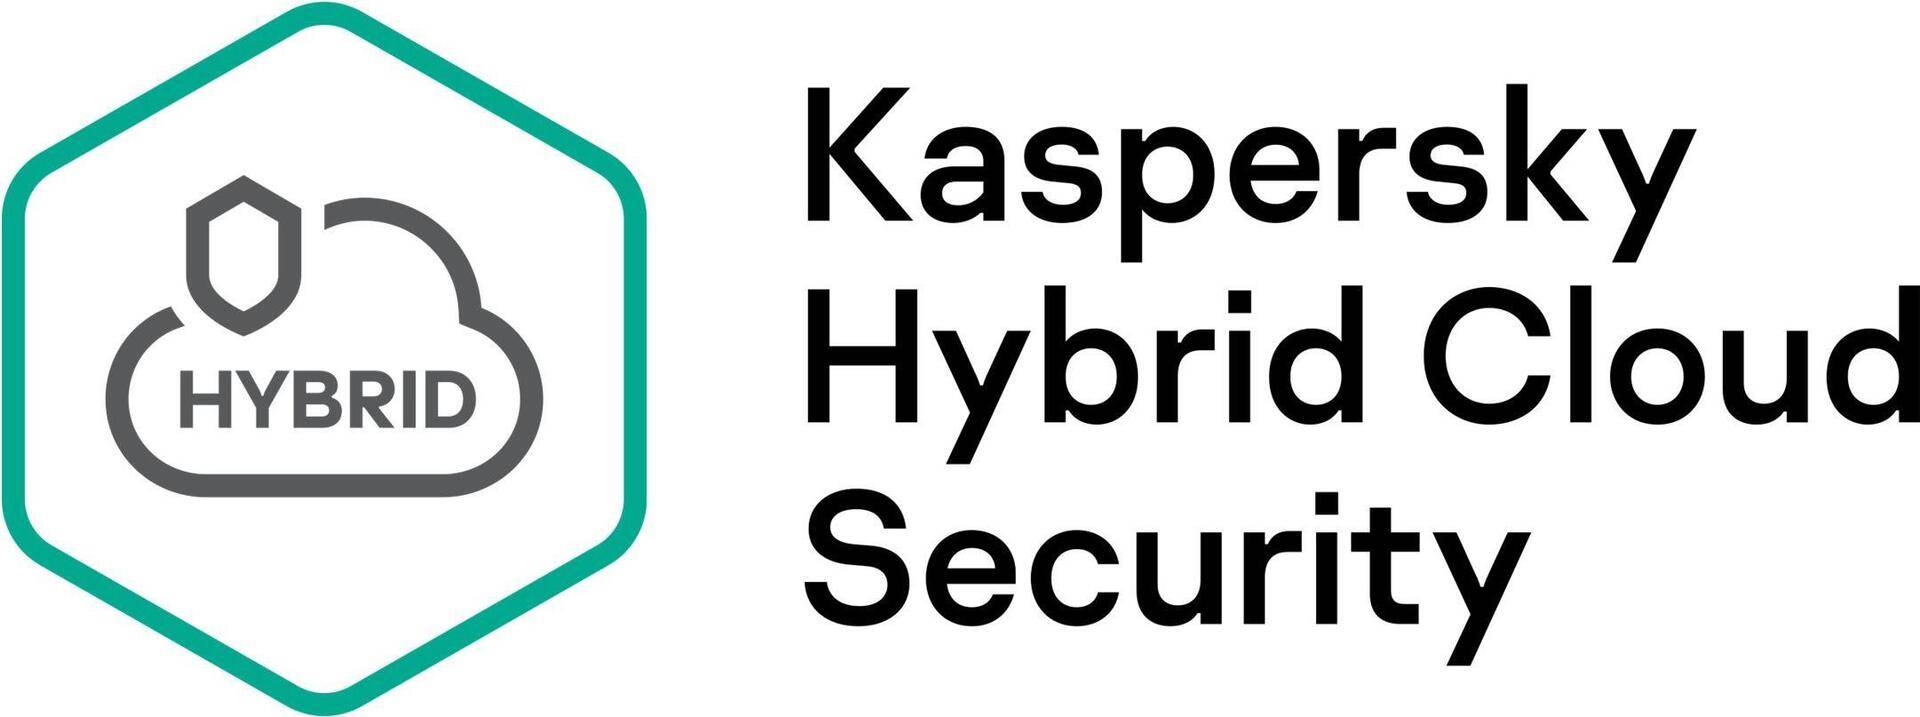 Kaspersky Hybrid Cloud Security - Erneuerung der Abonnement-Lizenz (1 Jahr) - 1 CPU - Volumen - Stufe T (250-499) - Europa (KL4554XATFR) von Kaspersky Lab